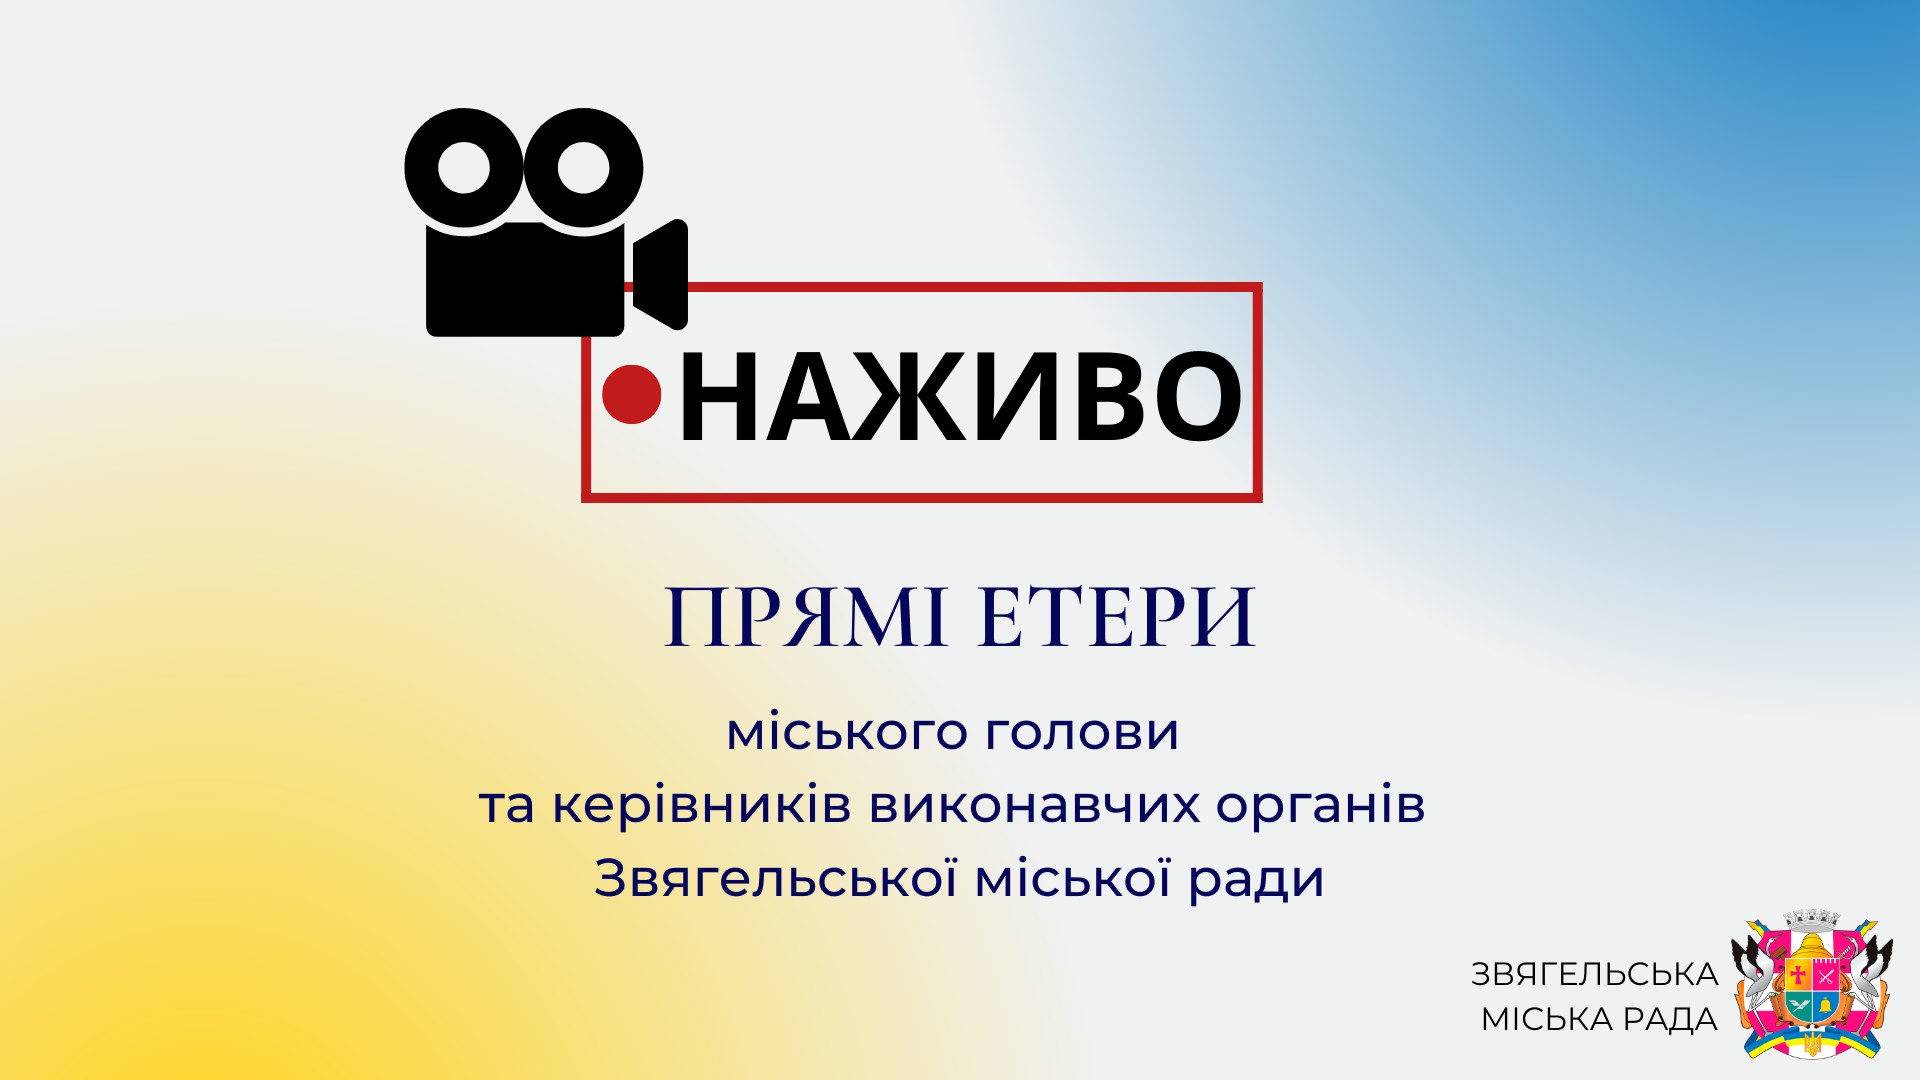 27 грудня о 18:00 відбудеться прямий етер з начальницею юридичного відділу міської ради Наталією Грабовською